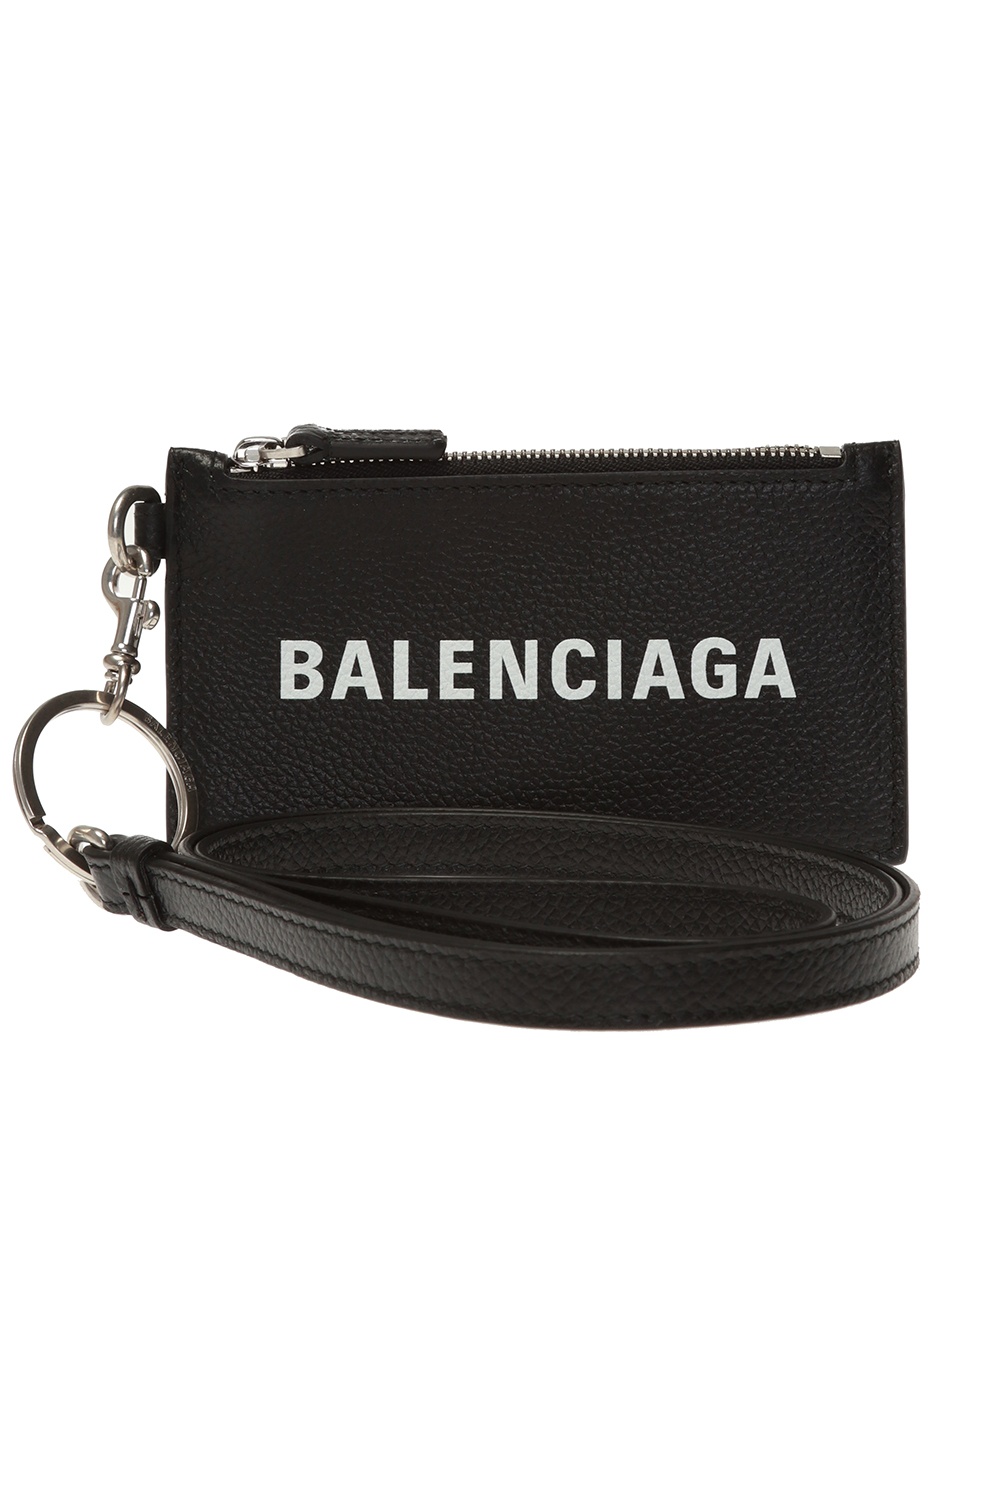 Balenciaga Logo card case | Men's Accessories | Vitkac